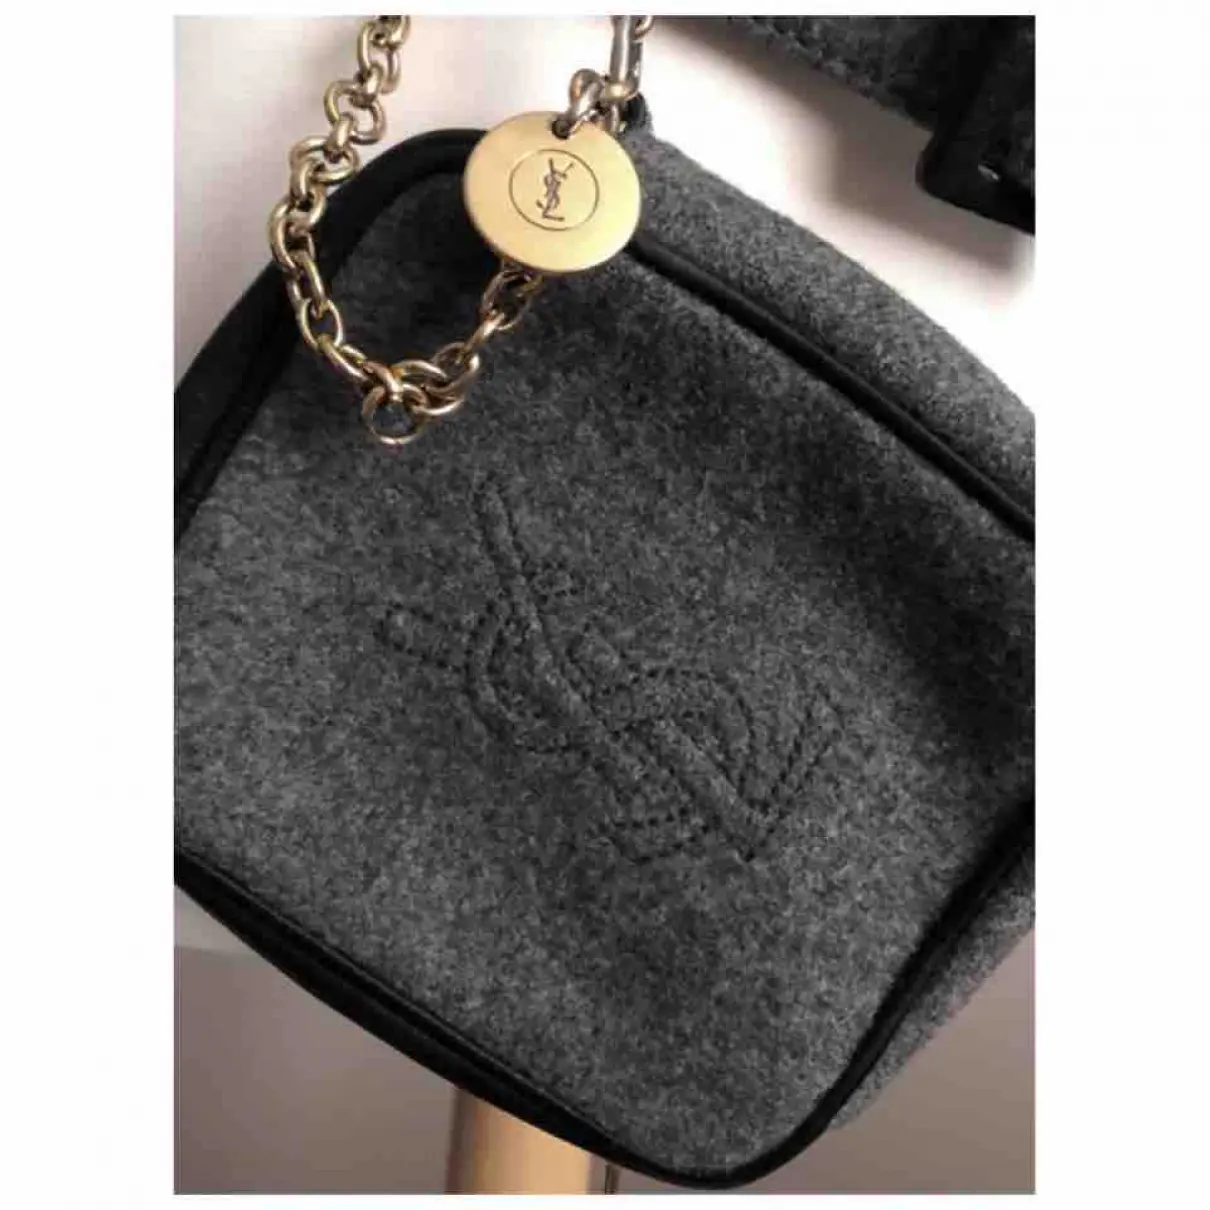 Buy Yves Saint Laurent Belle de Jour cloth clutch bag online - Vintage